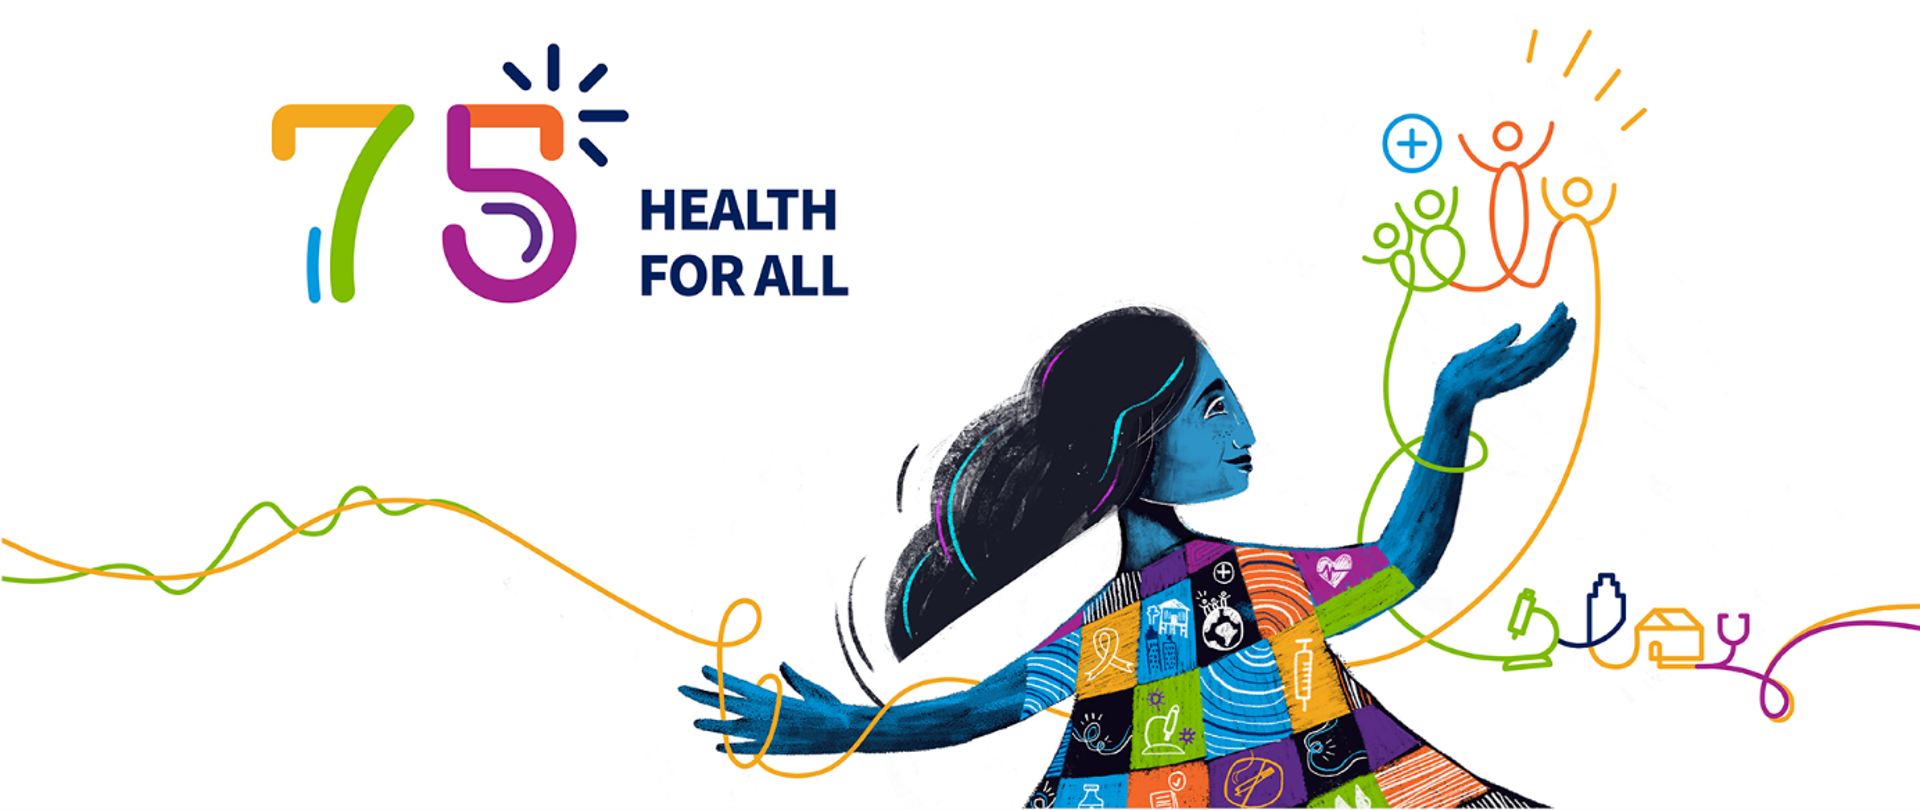 Grafika - kolorowy wizerunek kobiety, napis: 75 Health For All